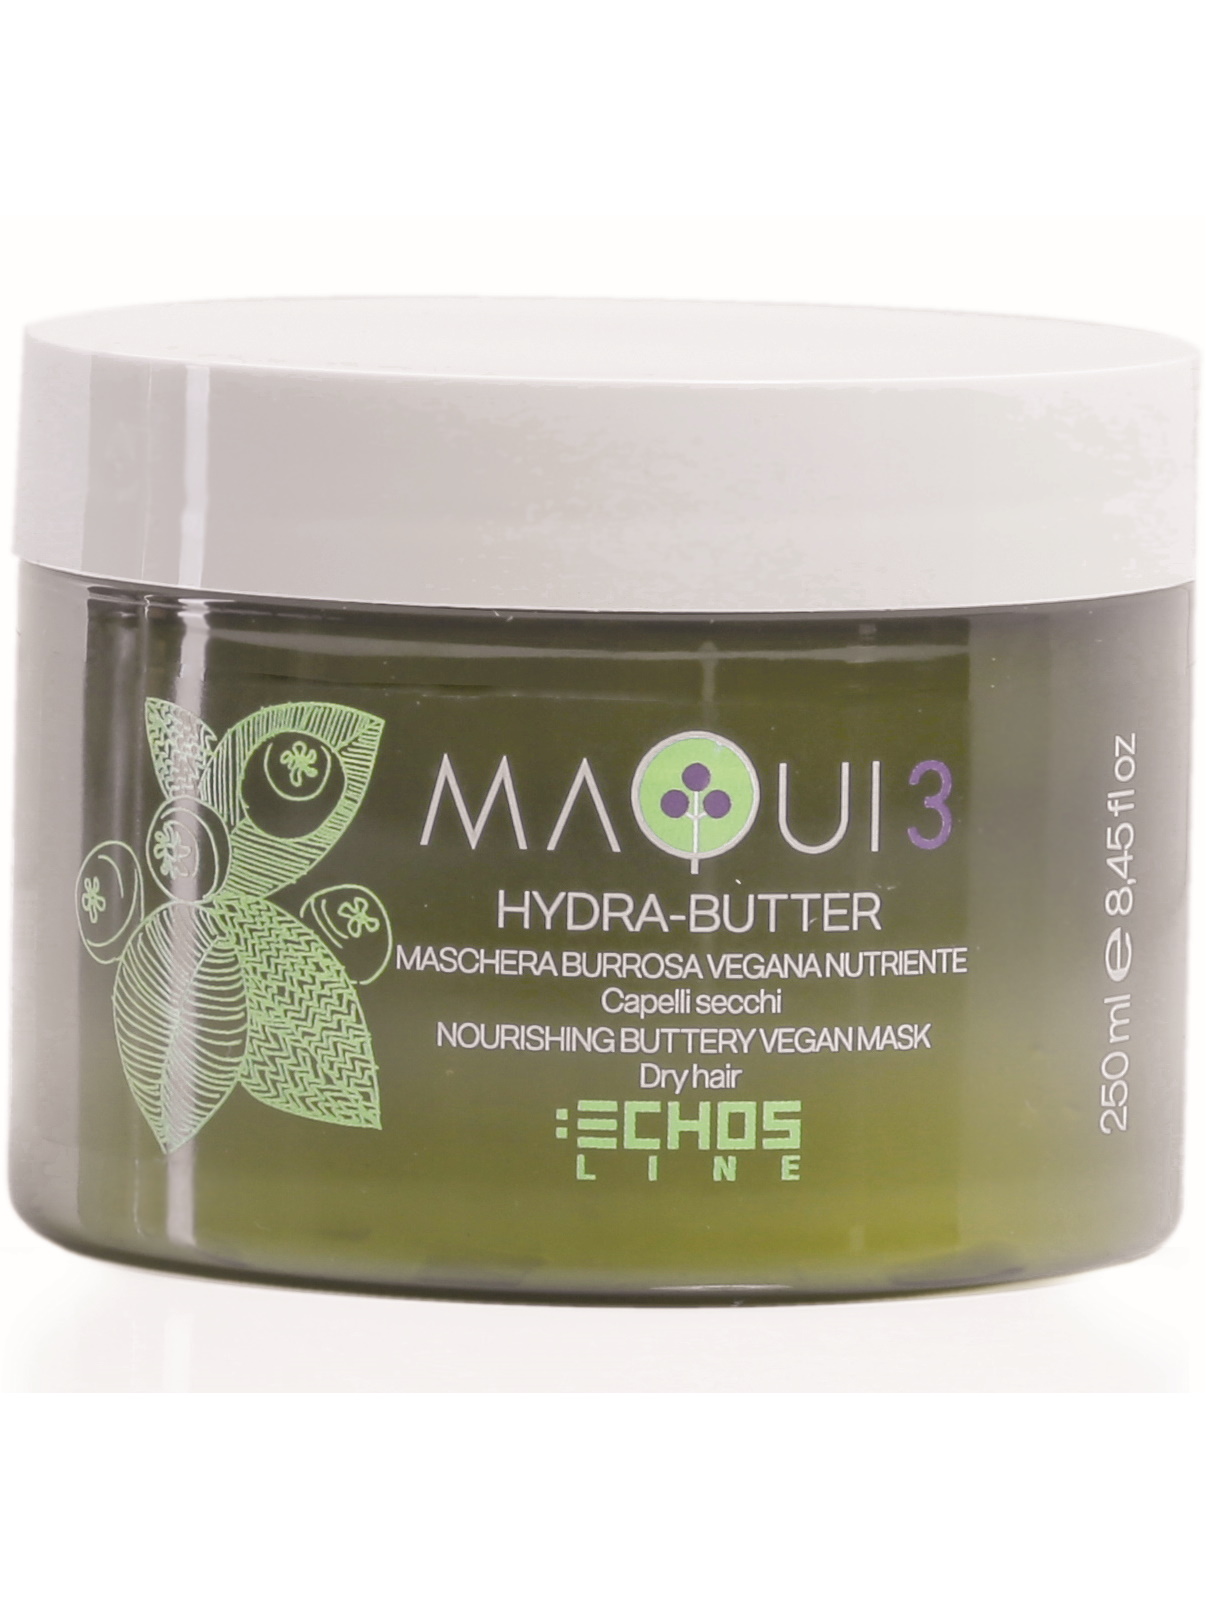 Маска Echos Line MAQUI 3 для питания волос  натуральная 250 мл